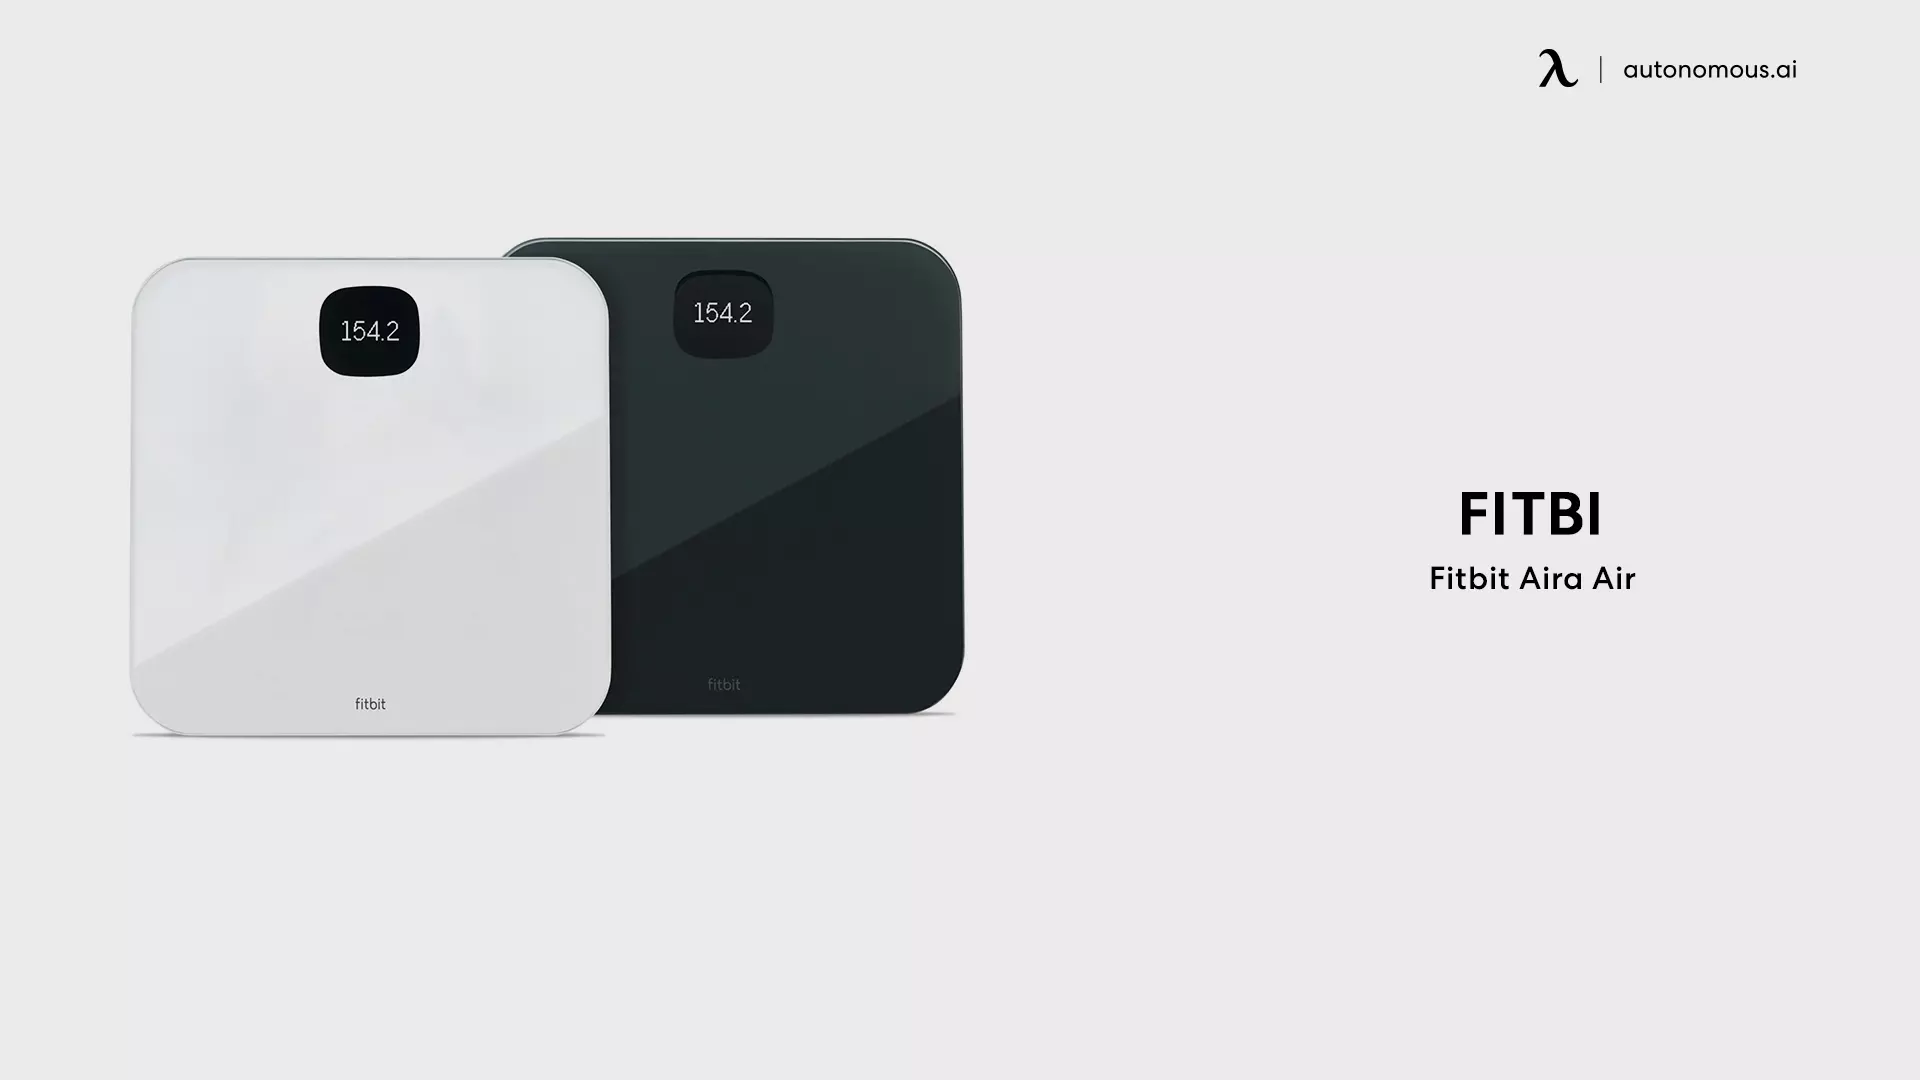 Fitbit Aira Air - best smart scale